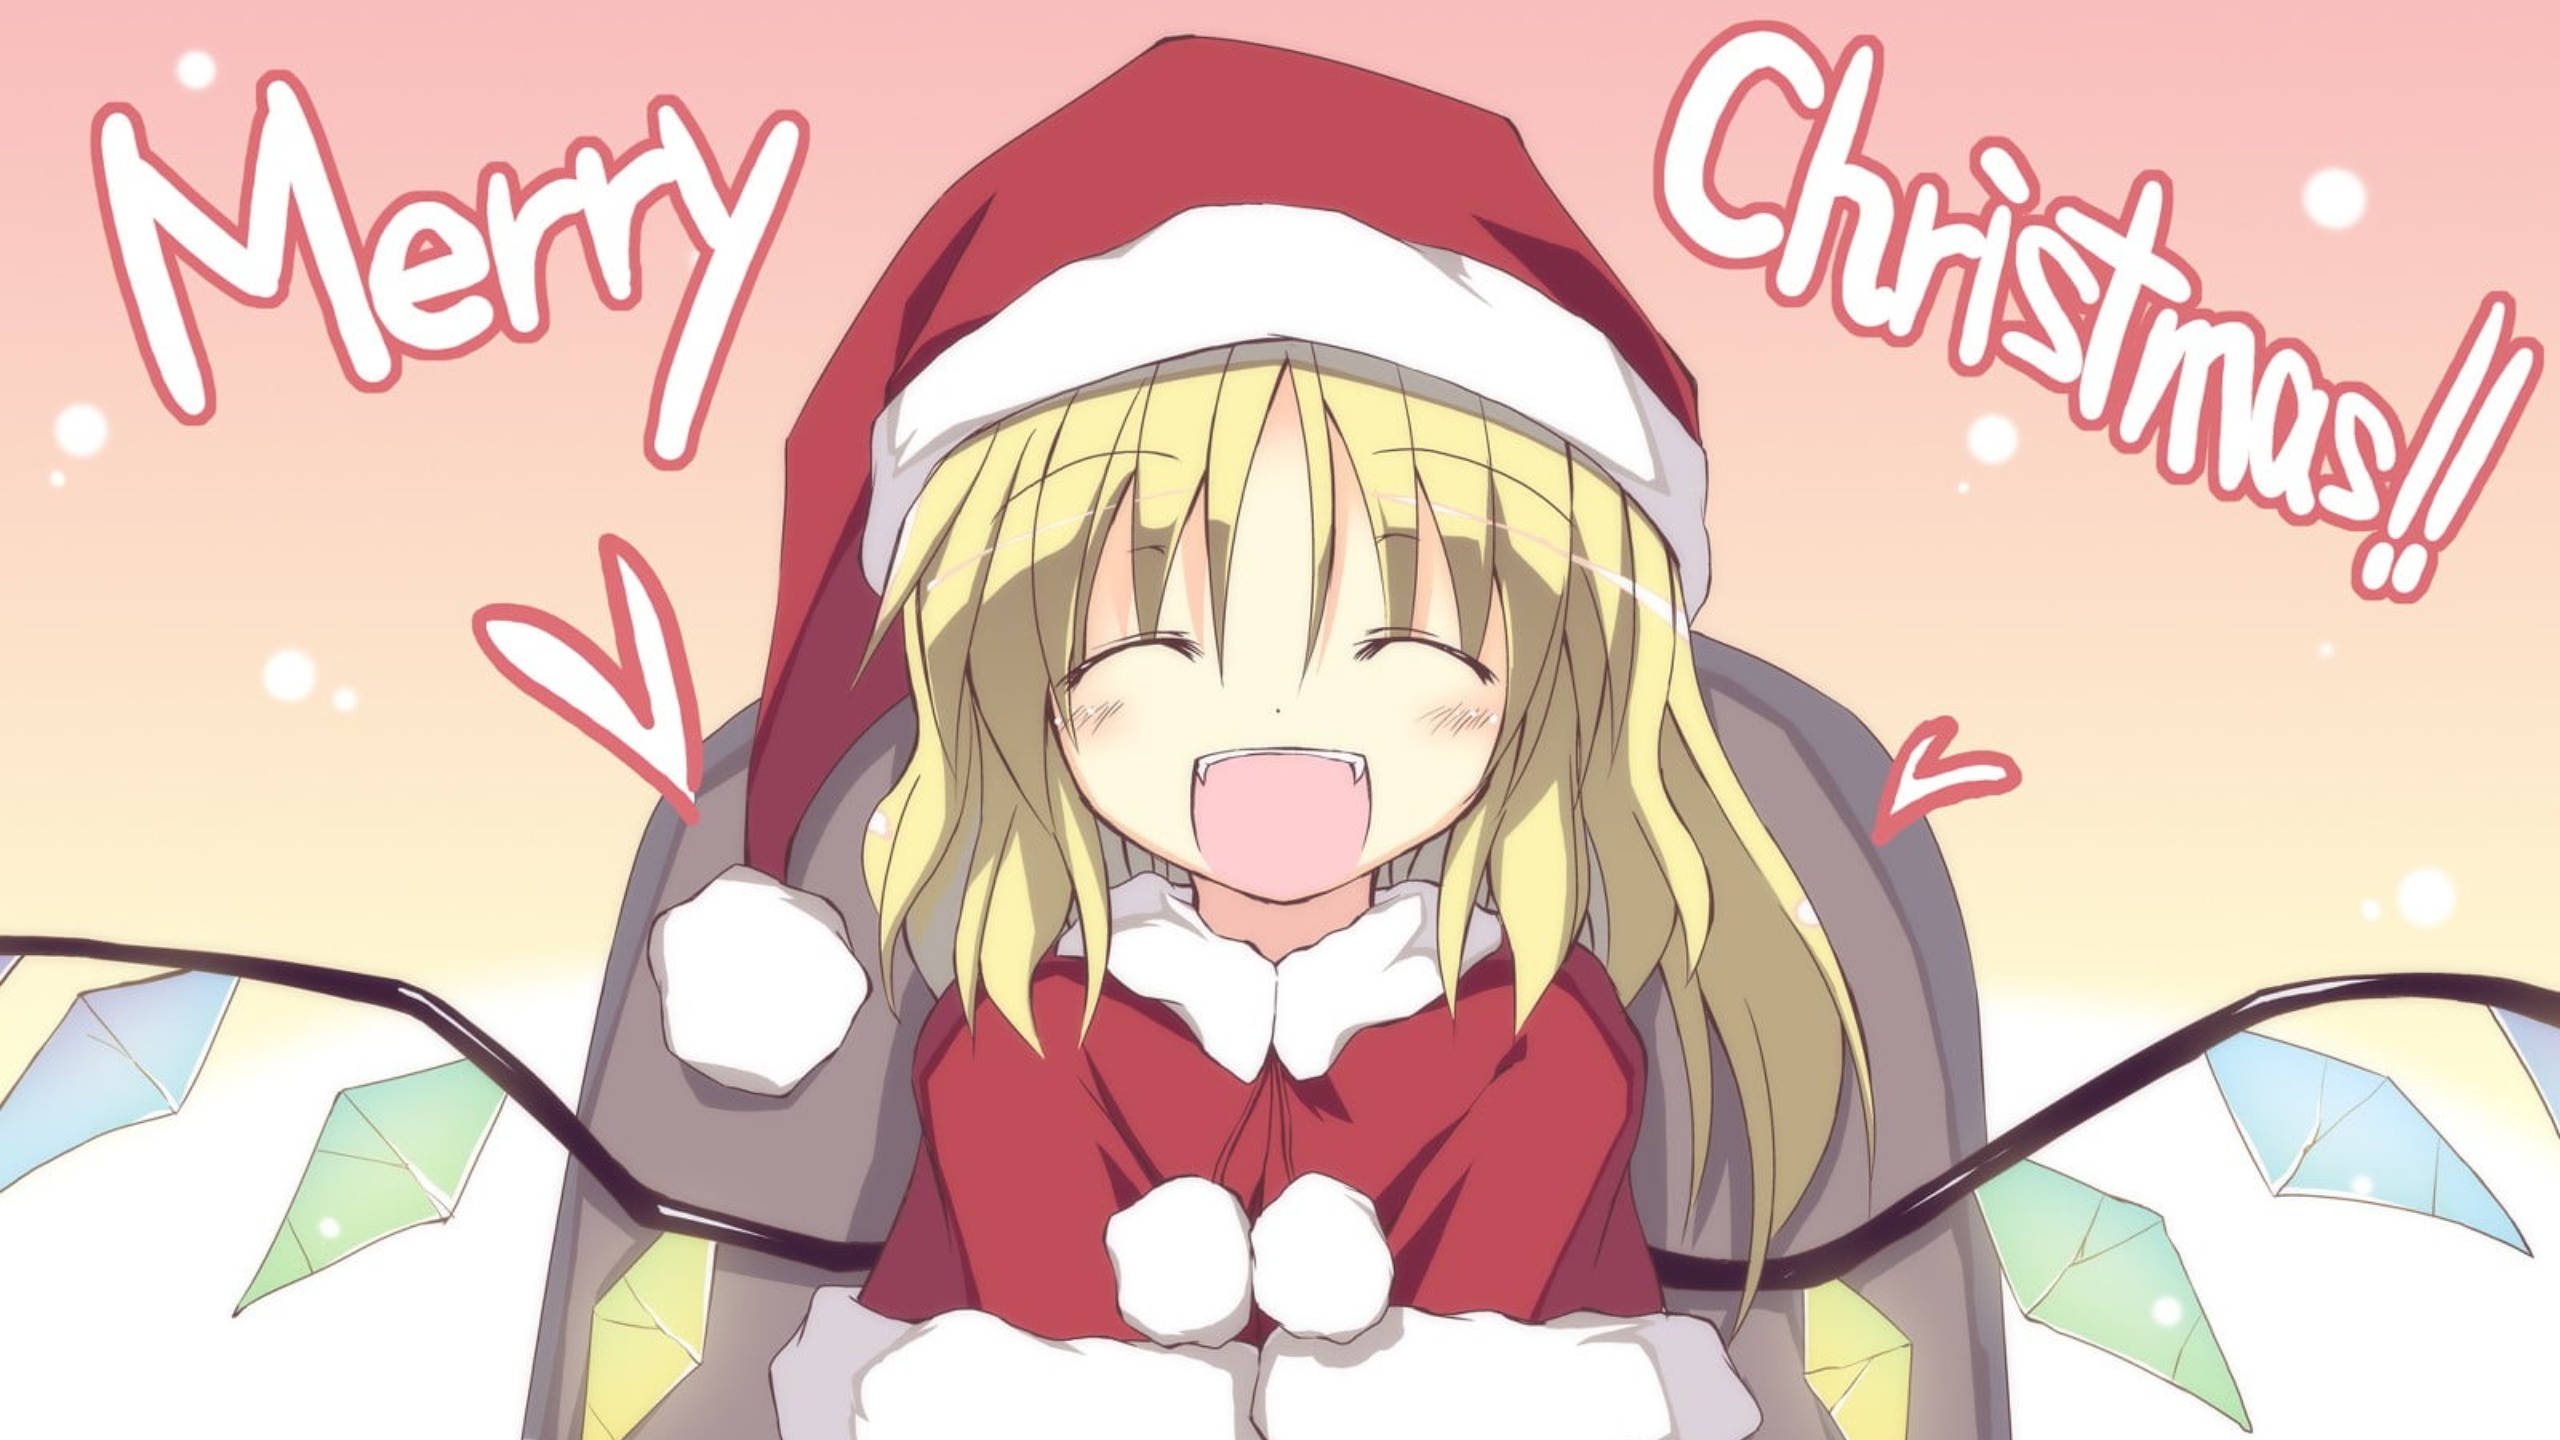 Bleach Merry Christmas! | Anime christmas, Anime, Christmas wallpaper